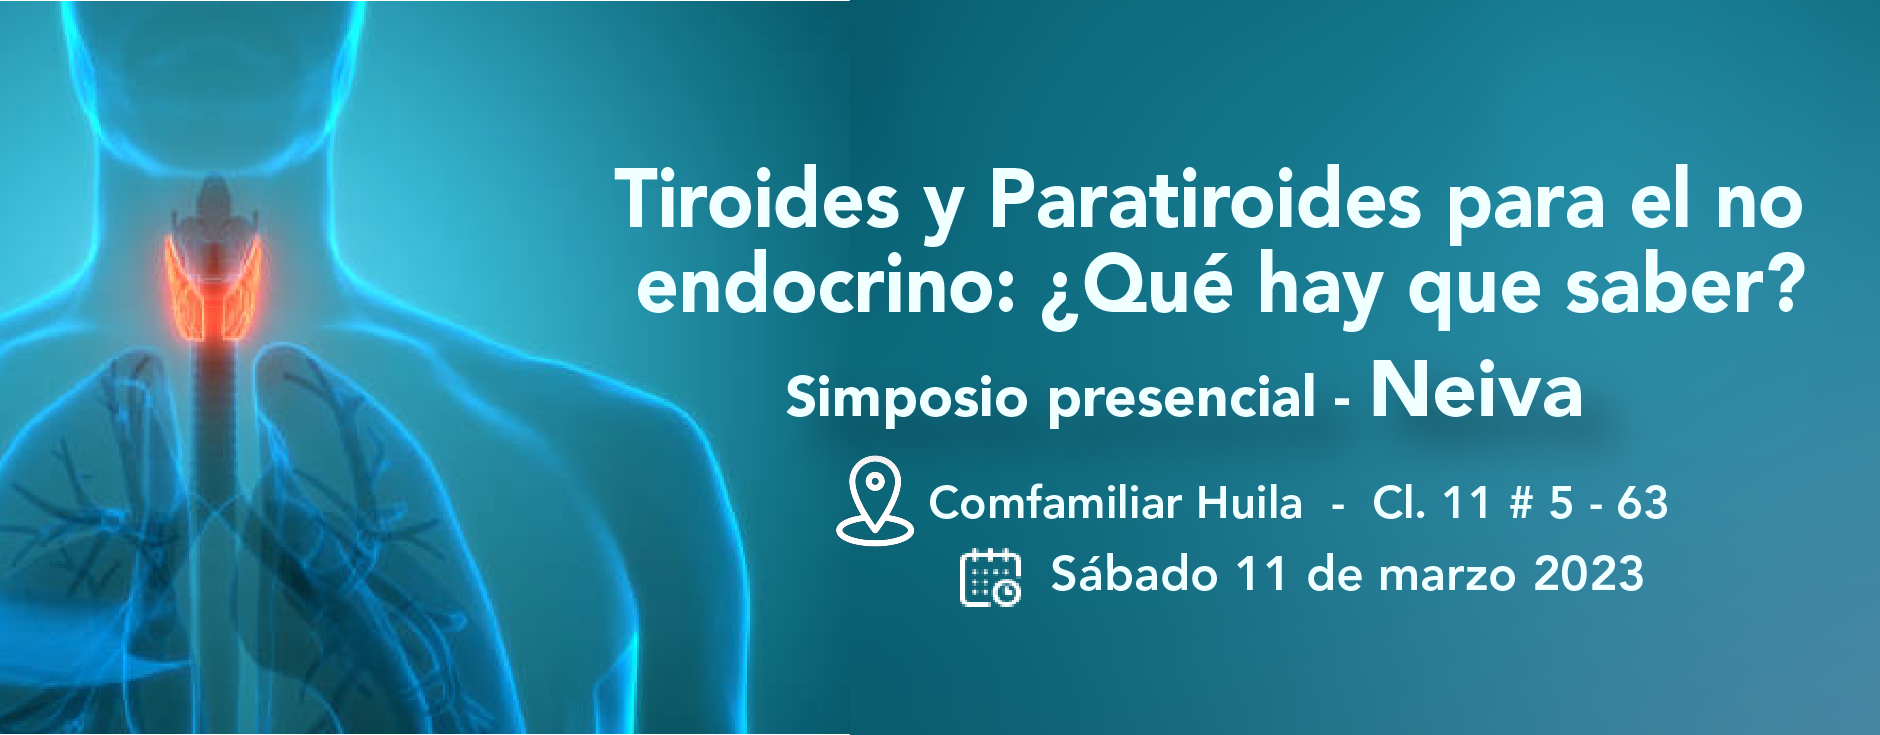 Tiroides y Paratiroides para el no endocrino: ¿Qué hay que saber?